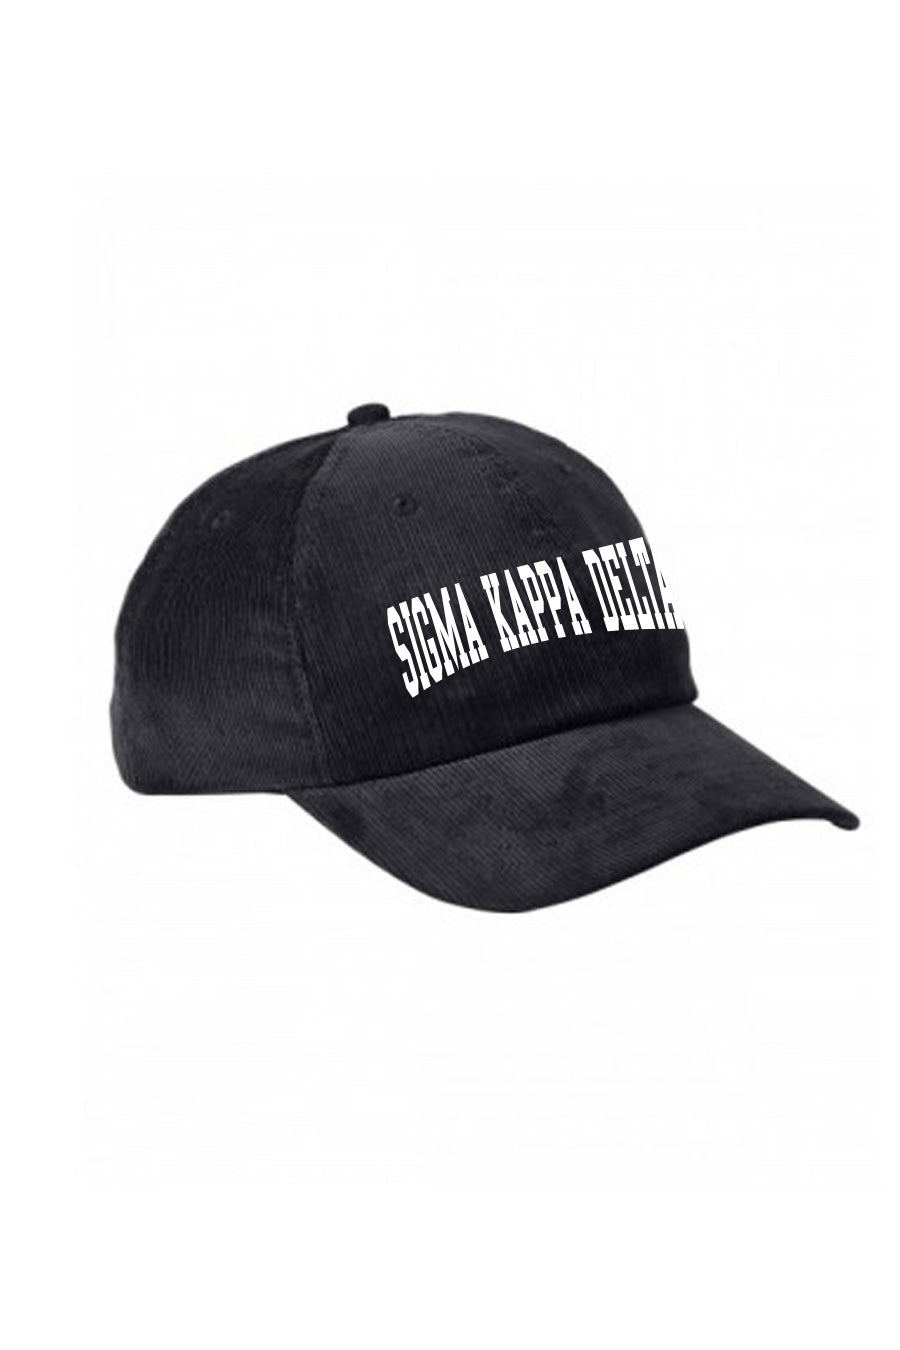 Sigma Kappa Delta Hat